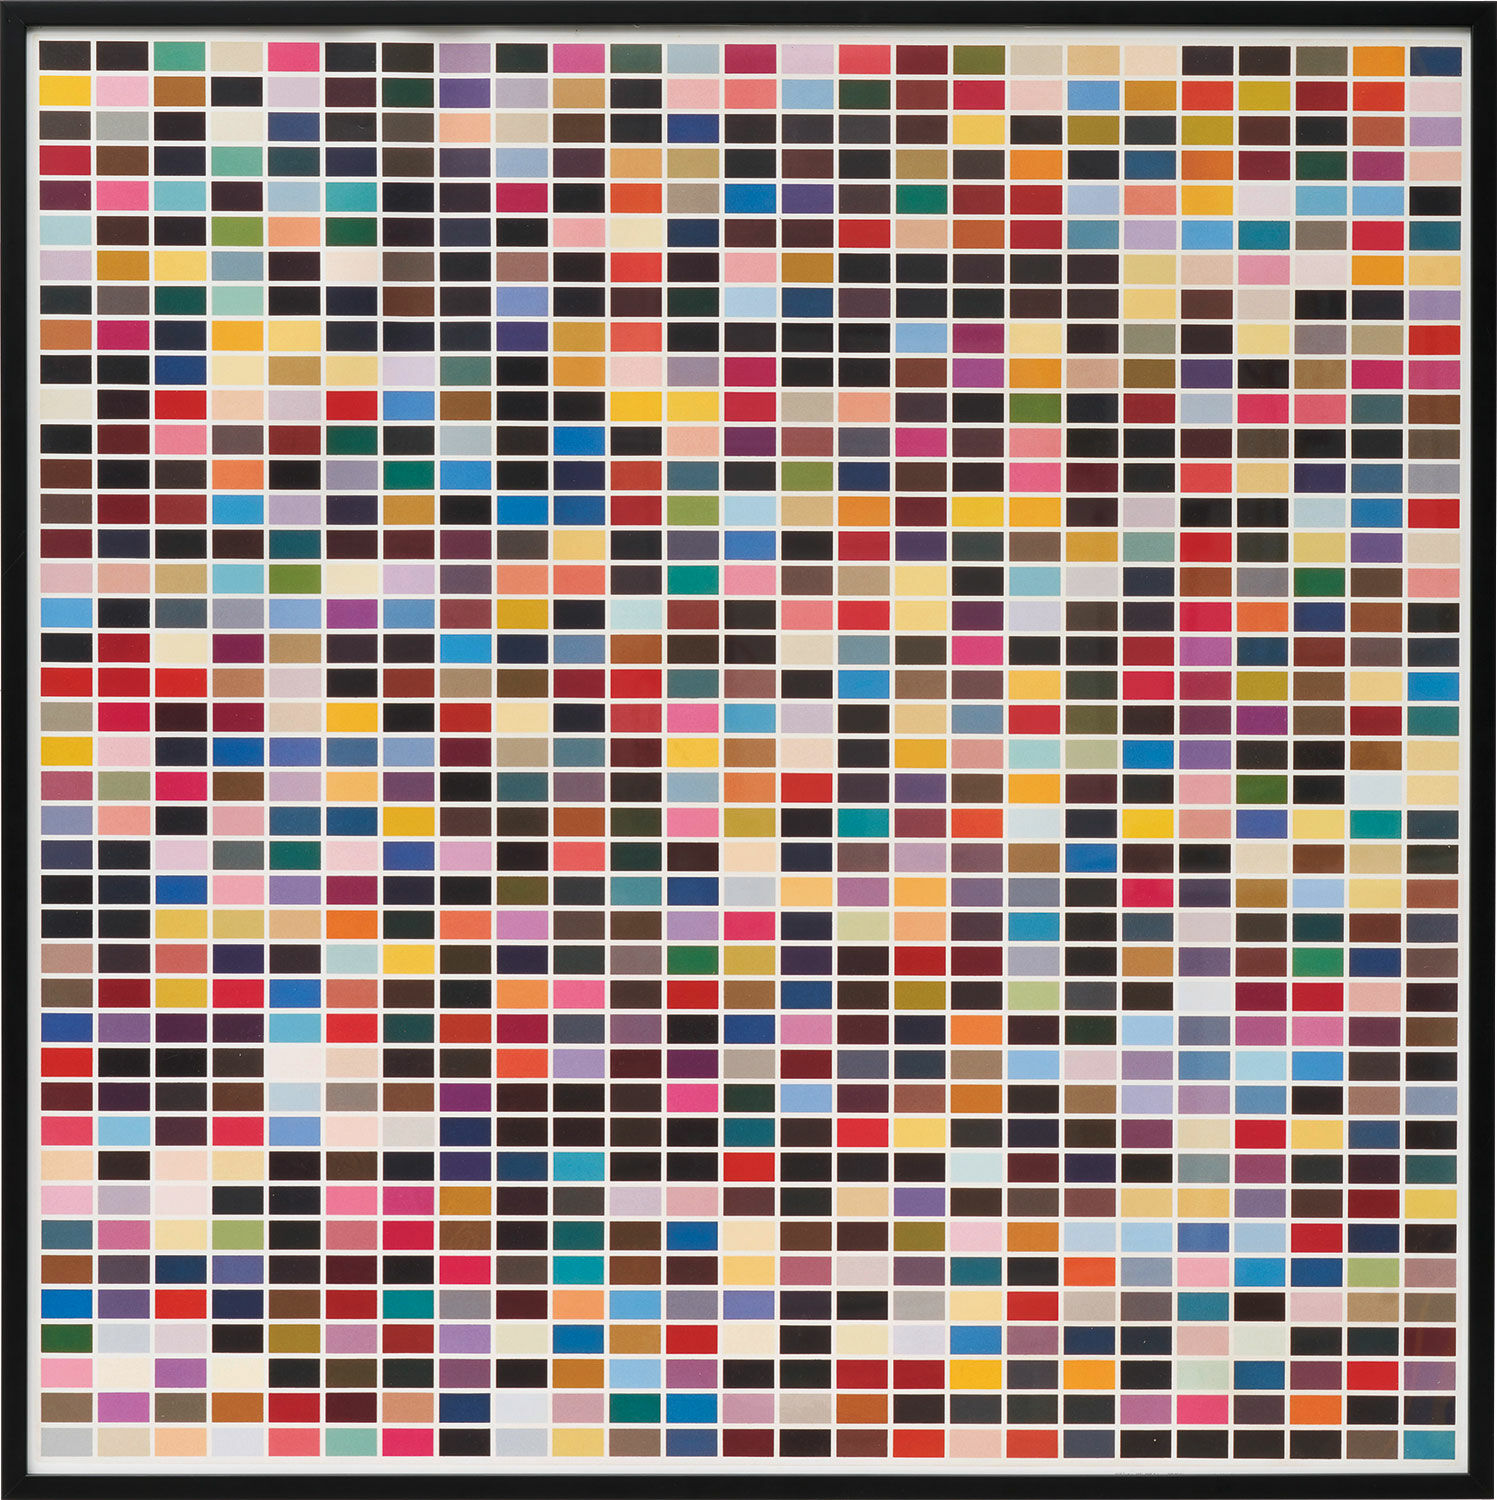 Billede "1025 Colours" (1974), indrammet von Gerhard Richter